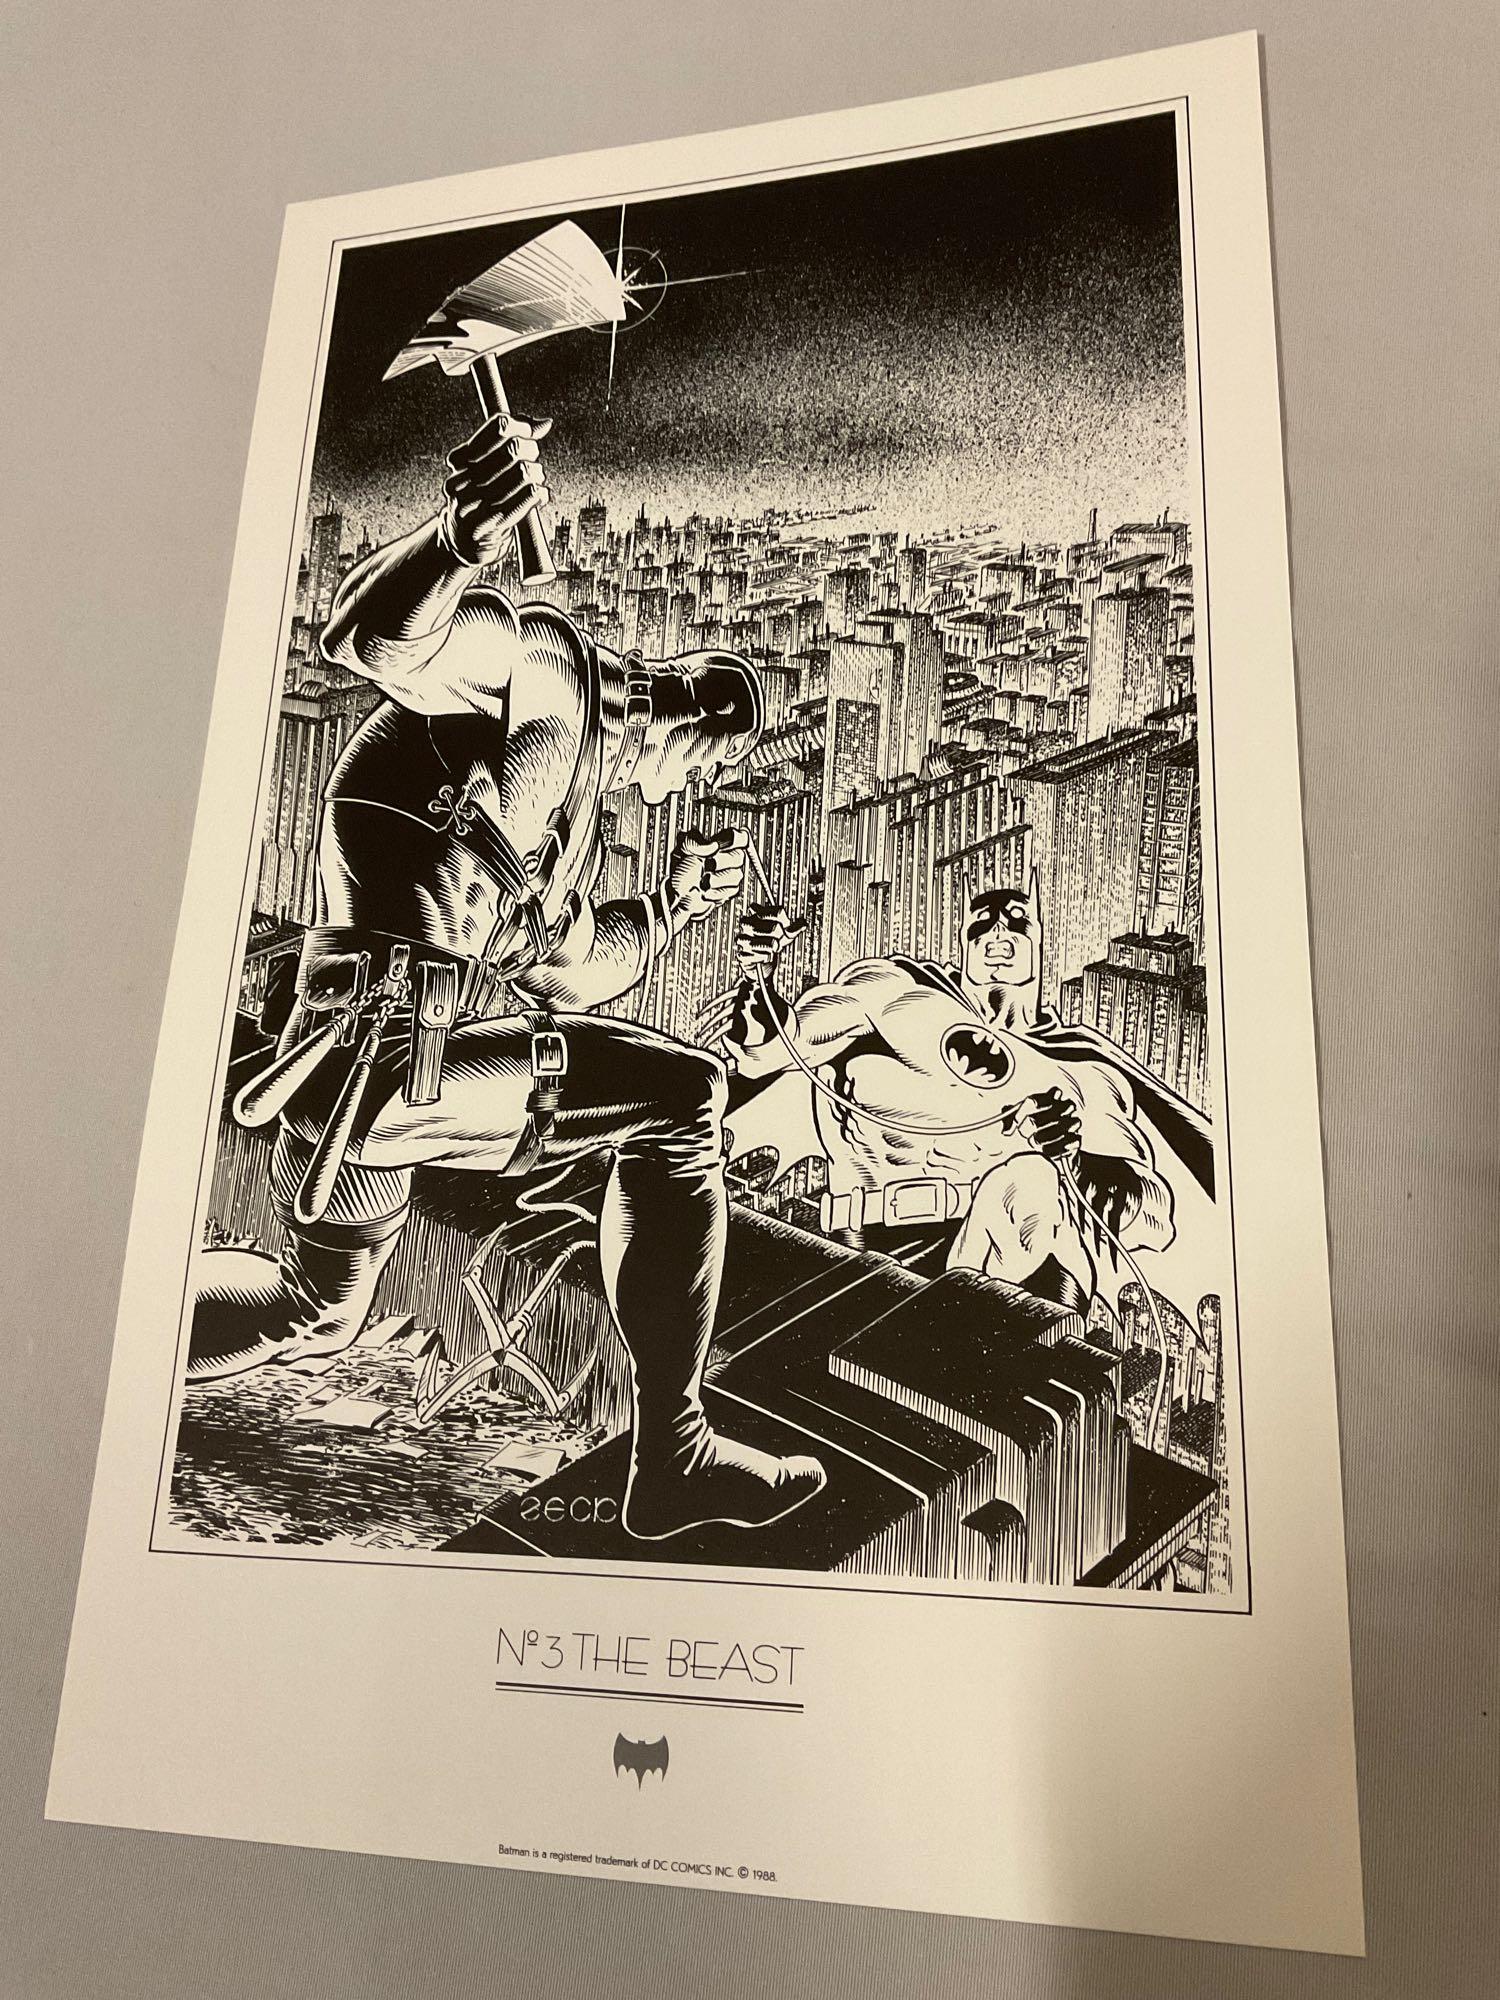 1988 vintage DC COMICS Batman Portfolio by Michael J. Zeck, 6 b&w comic cover art prints w/ folder